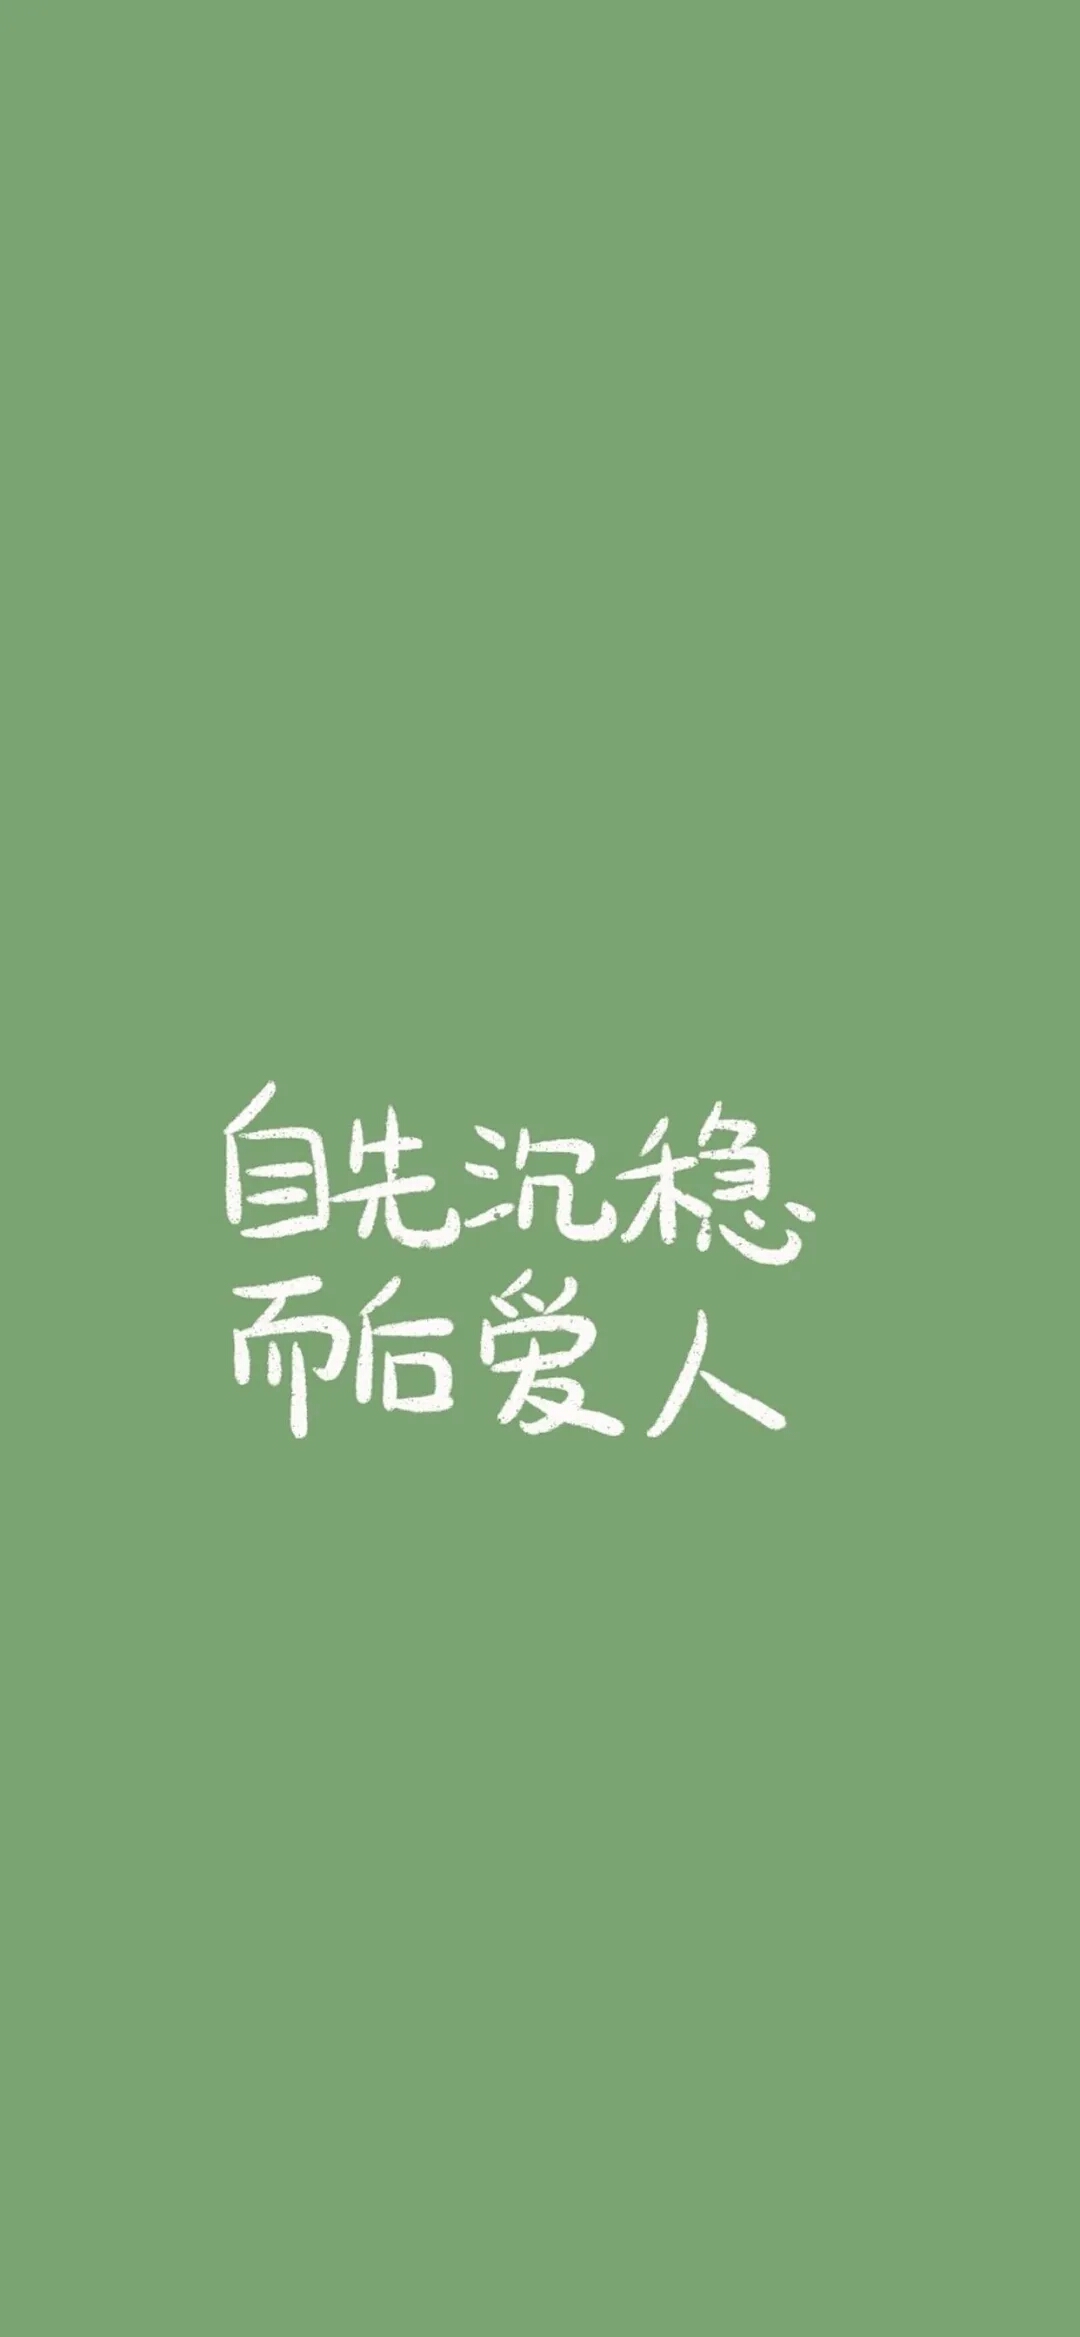 绿色壁纸#励志文字文案#简约纯色#干净高级